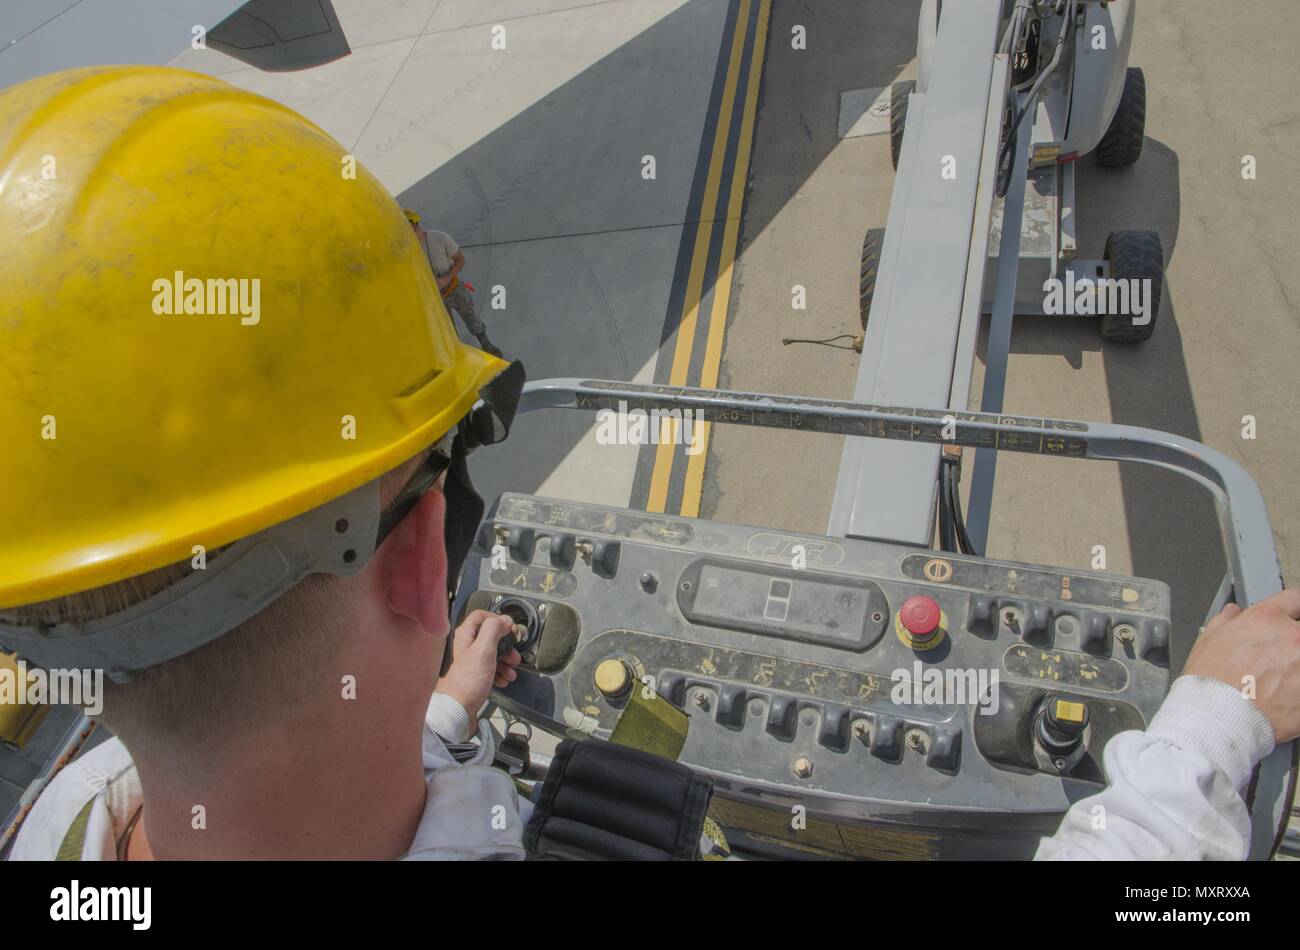 Aerotécnico de Primera Clase Ryan Hobbs, 380o KC-10 jefe de tripulación, baja un ascensor a la planta después de completar una I E o inspección de admisión y escape del motor 2 de un avión KC-10 de la Base Aérea, Al Dhafra, Emiratos Árabes Unidos, 29 de mayo de 2018, 29 de mayo de 2018. Durante una inspección Hobbs controles generales de hardware, el motor y las aspas del ventilador en busca de cualquier daño visible.(EE.UU. Foto de la Guardia Nacional Aérea por el Sargento. Ross A. Whitley). () Foto de stock